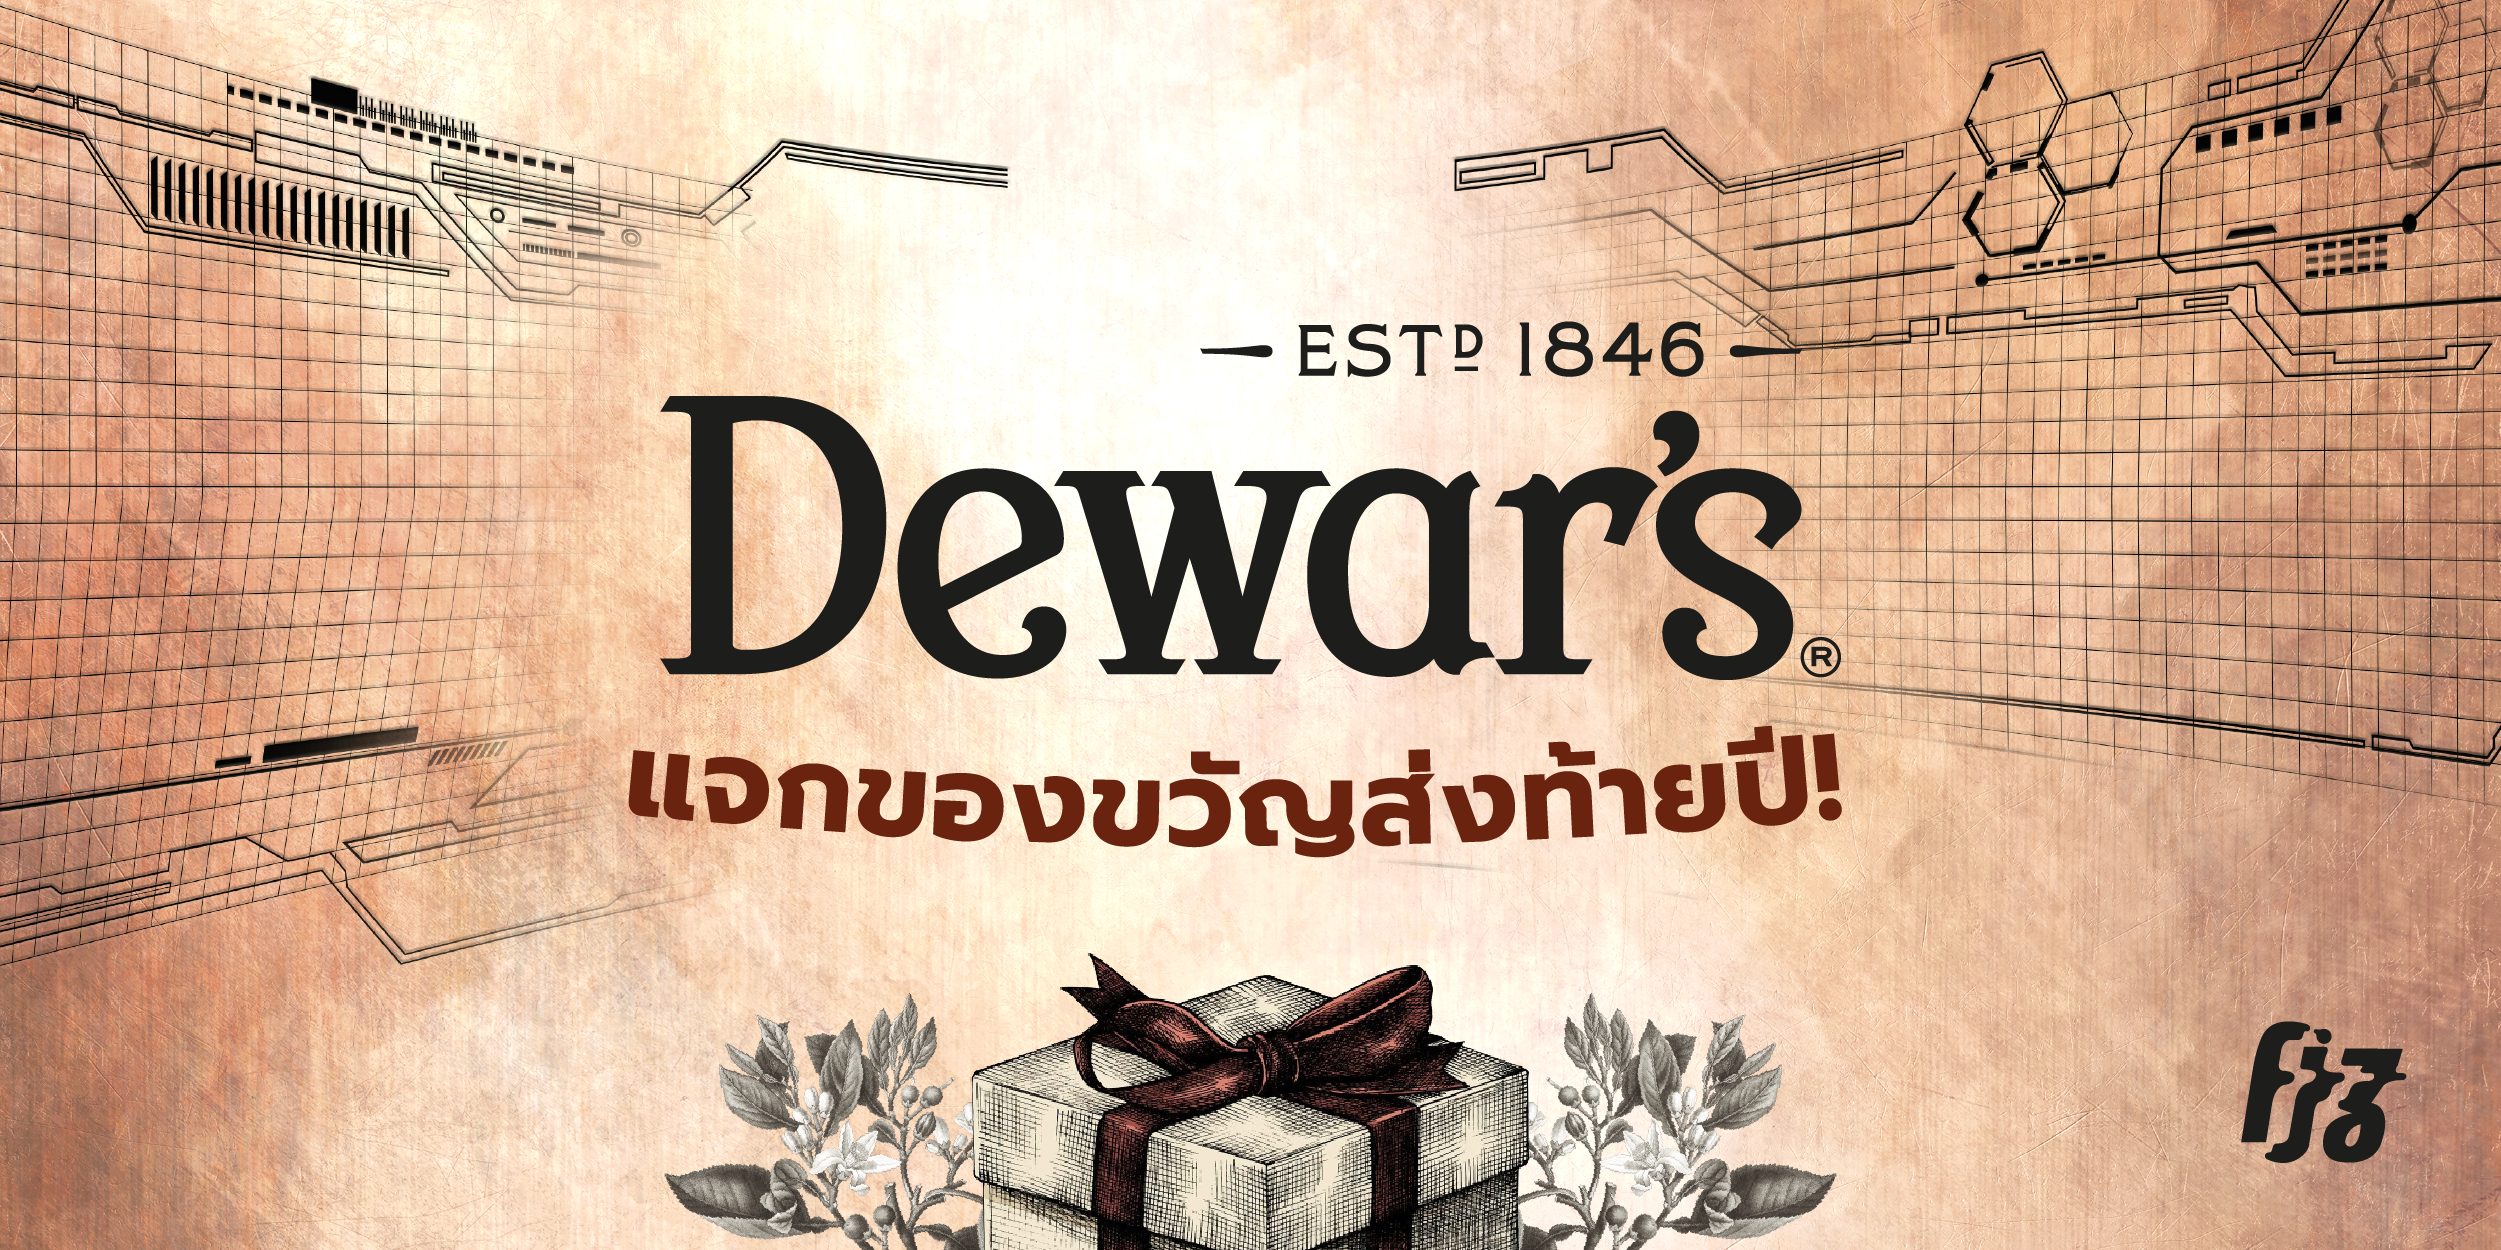 Dewar’s รับบทเป็นซานต้าแจกของขวัญส่งท้ายปีให้ทุกคนได้ไปฟินจิกหมอนกันที่บ้าน!